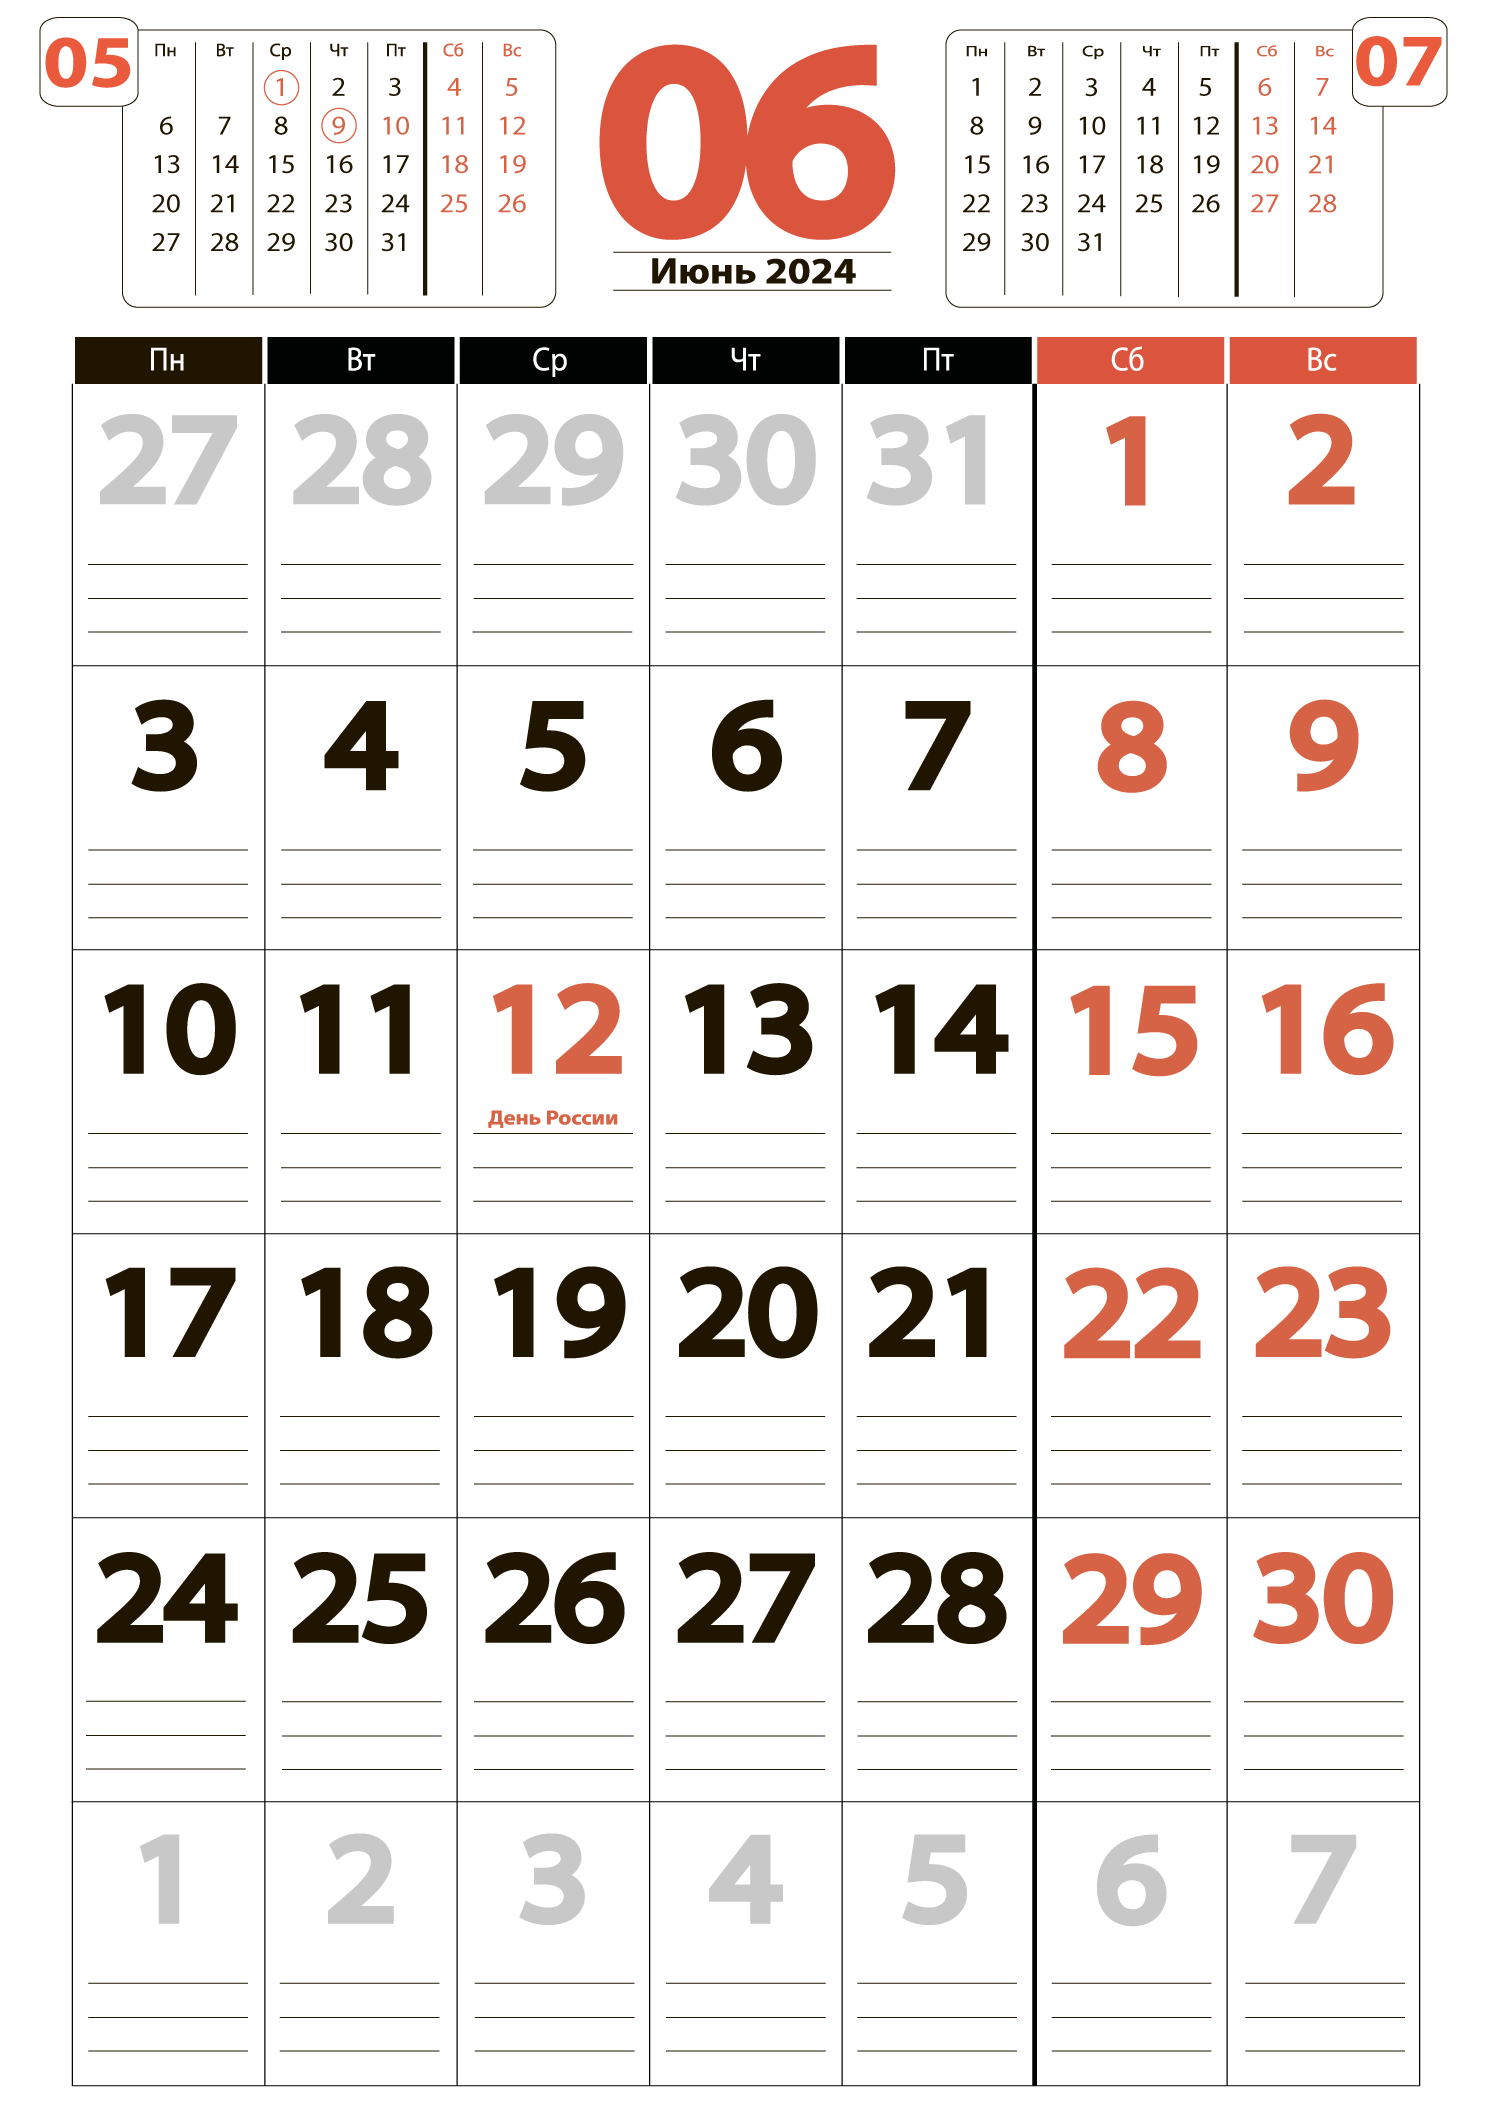 Печать крупного календаря на июнь 2024